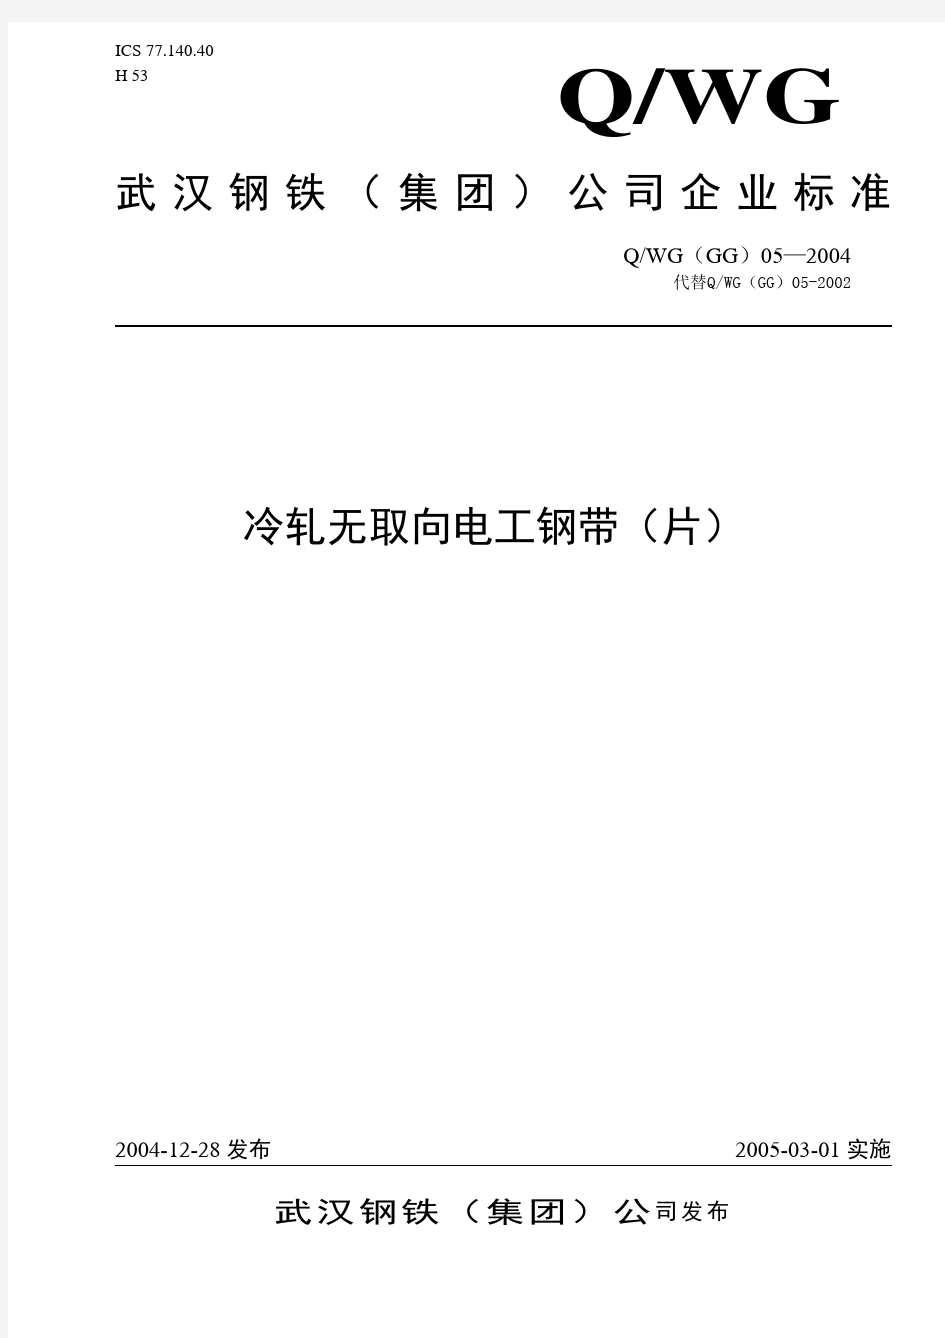 武汉钢铁股份有限公司企业标准-QWG(GG)05-2004《冷轧无取向电工钢带(片)》